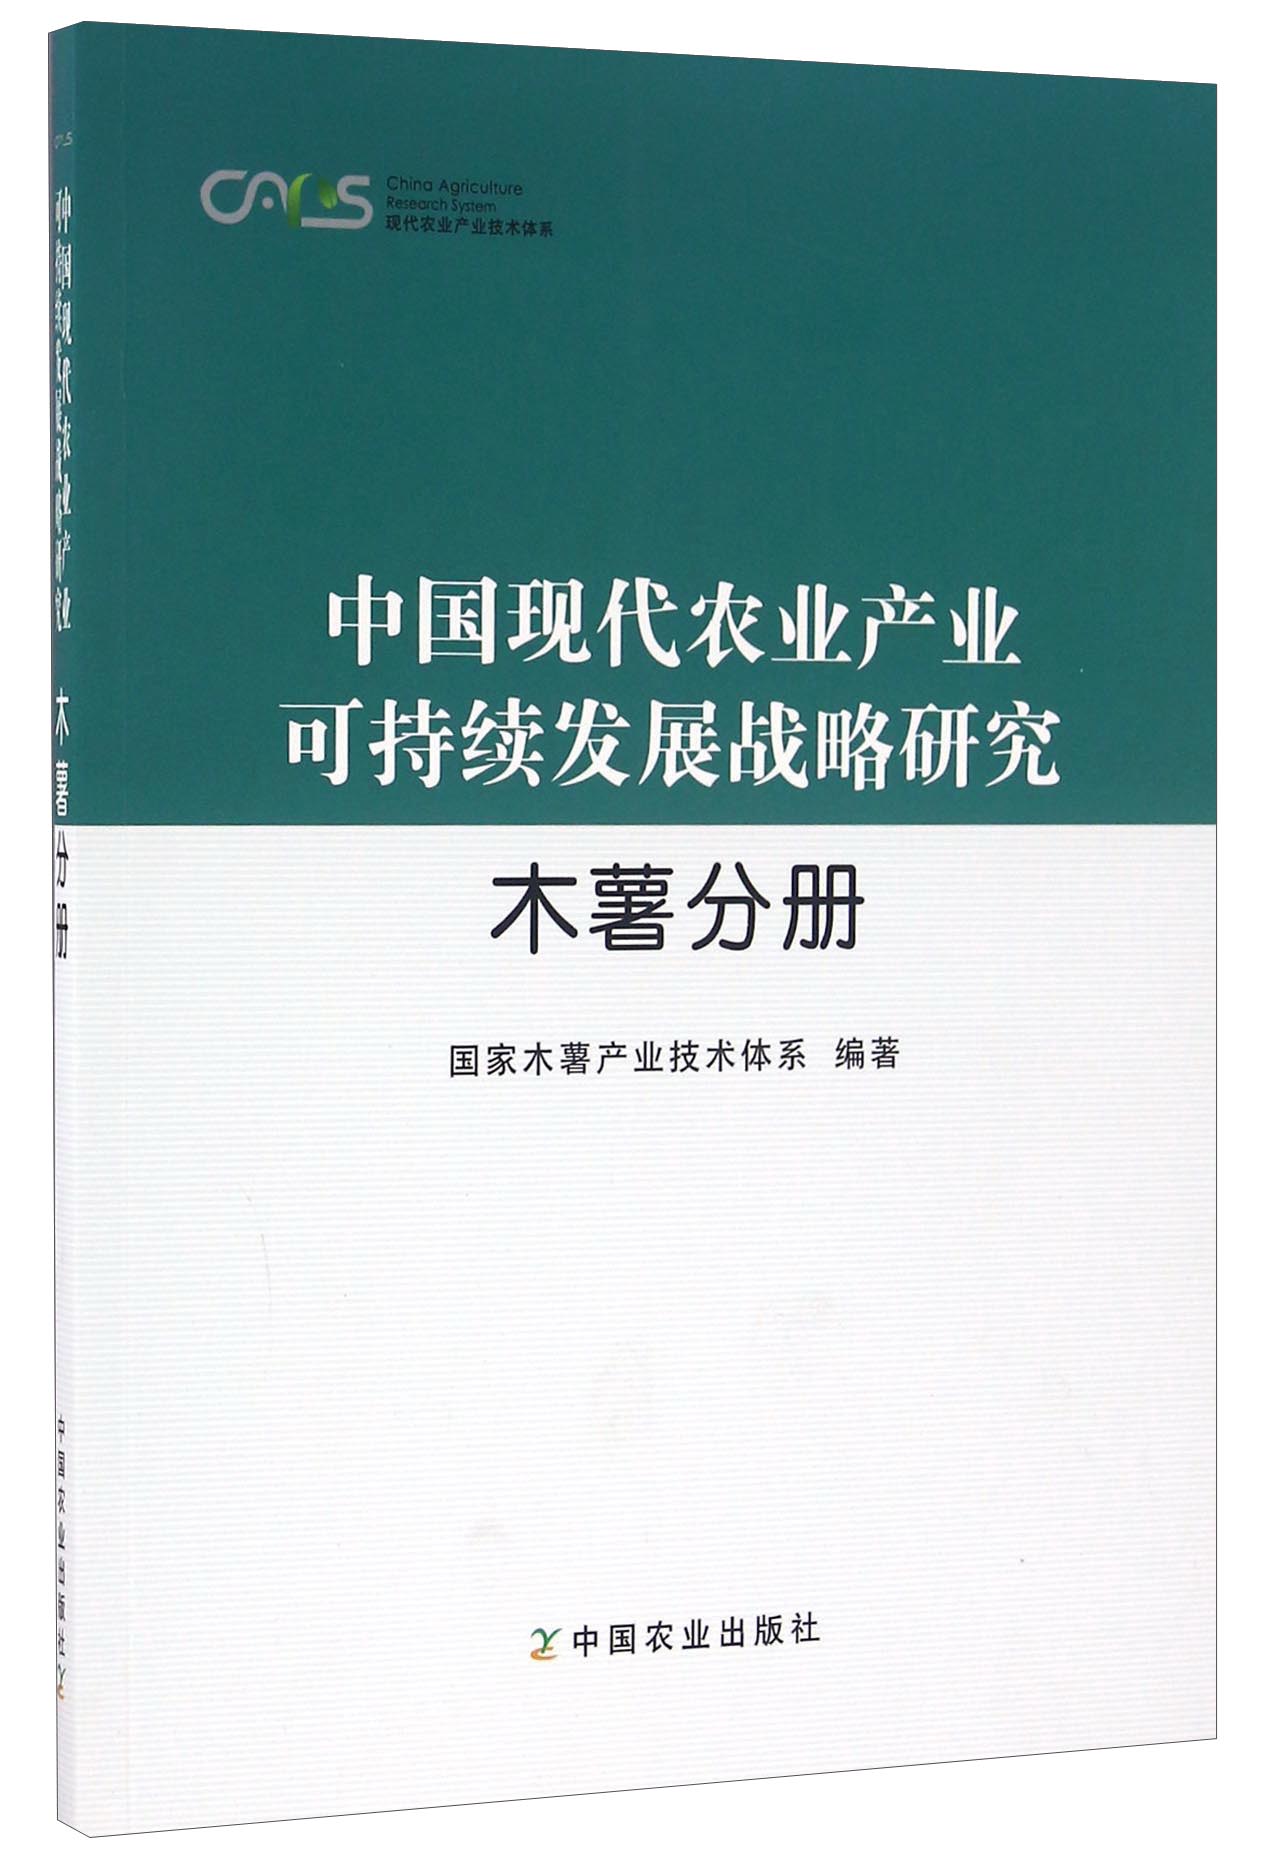 中国现代农业产业可持续发展战略研究 木薯分册/现代农业产业技术体系